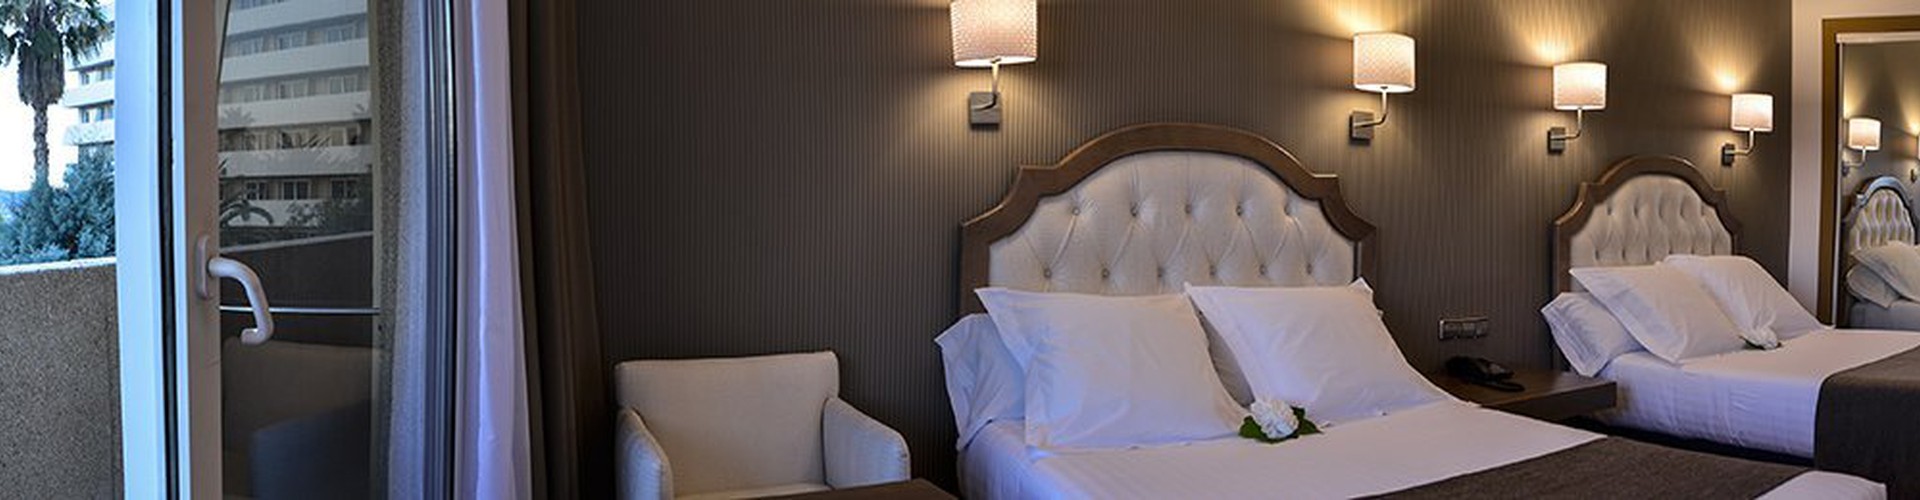 Beatriz Hoteles - Toledo - Rooms